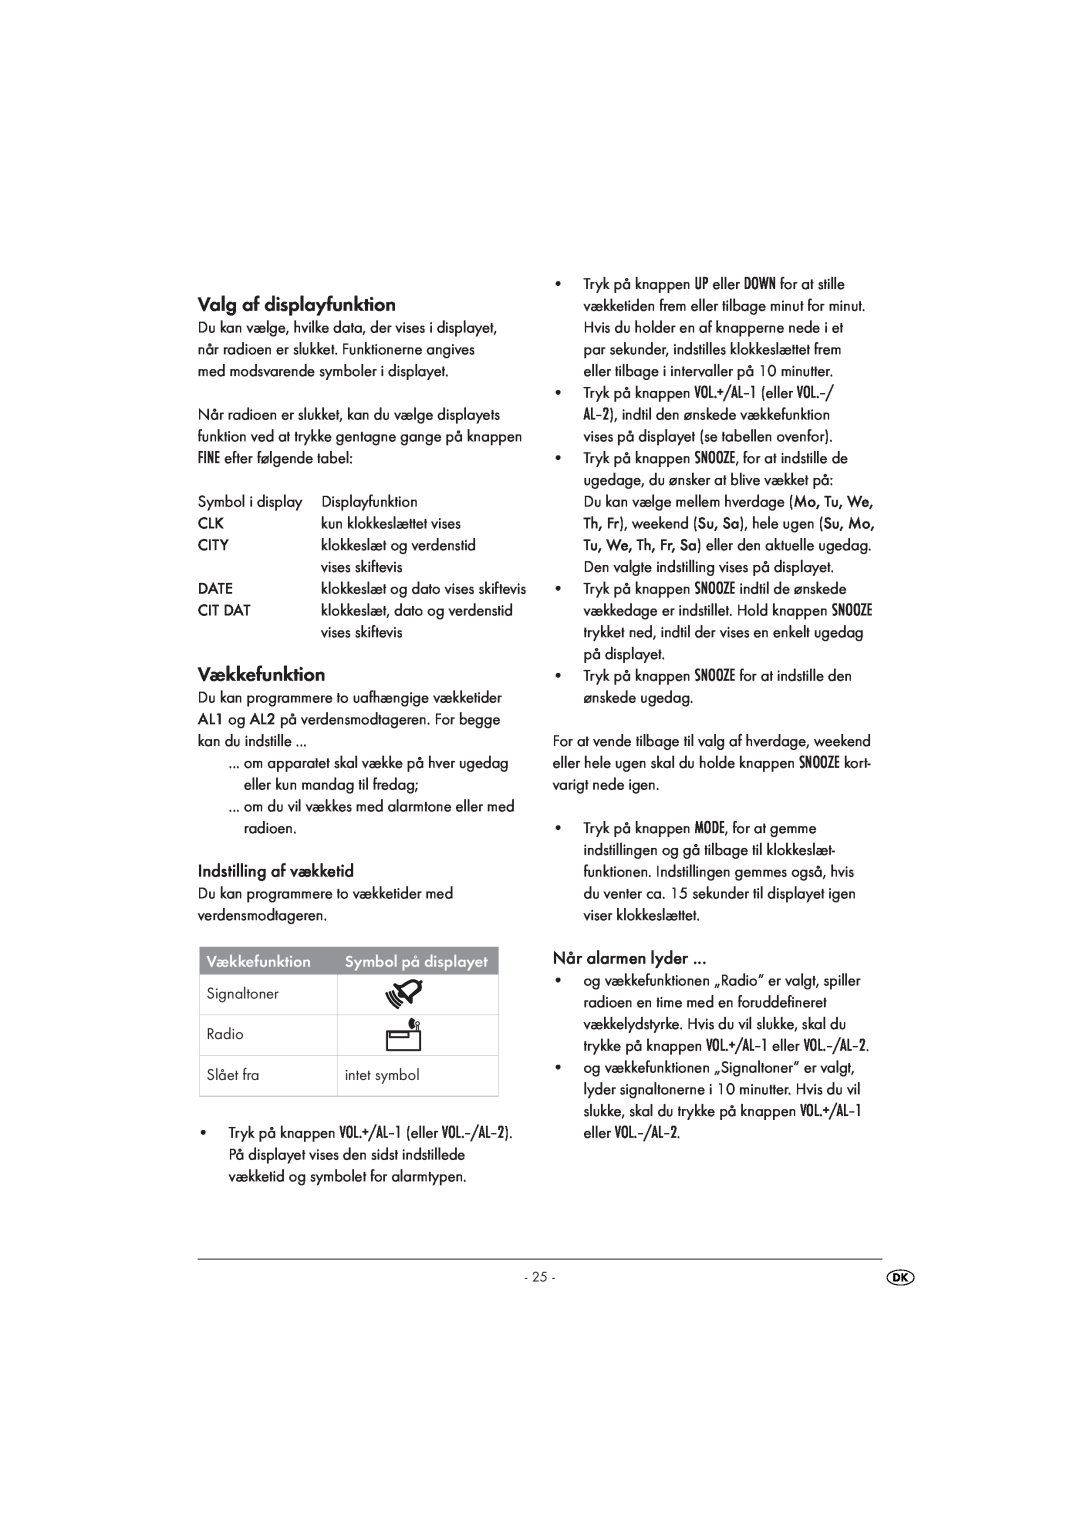 Silvercrest KH 2029 manual Valg af displayfunktion, Vækkefunktion, Indstilling af vækketid, Når alarmen lyder 